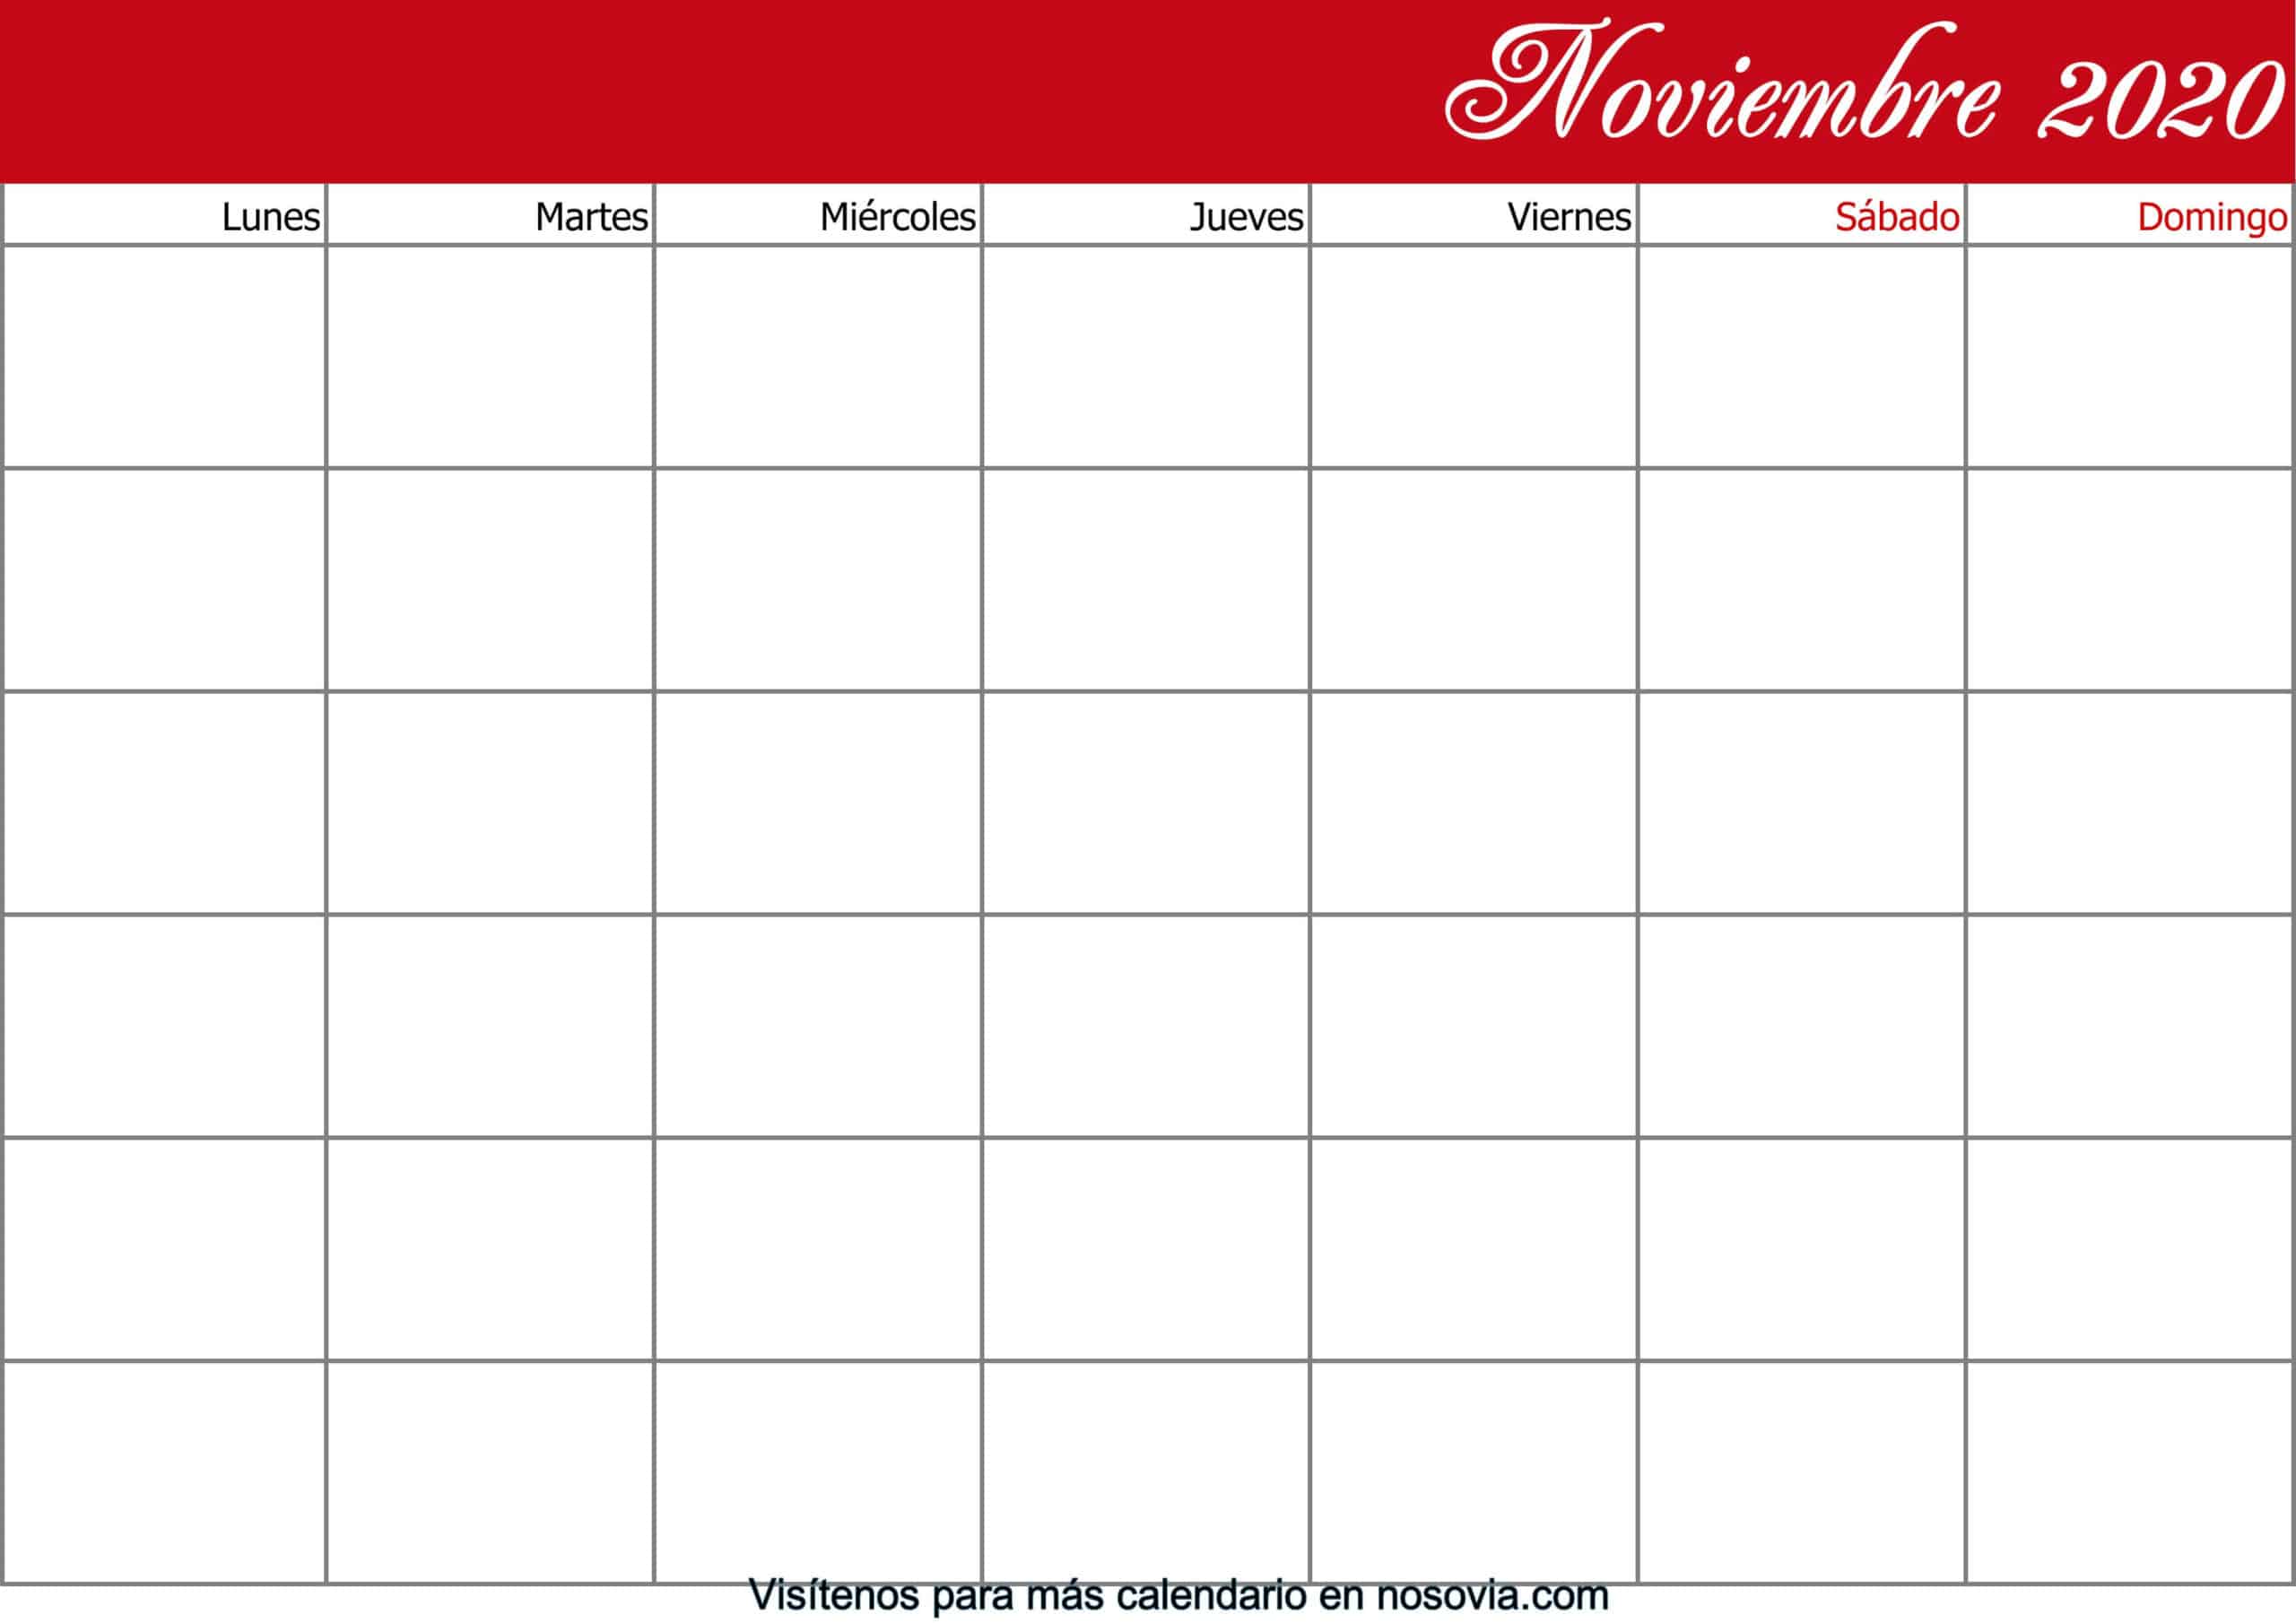 Calendario-noviembre-2020-en-blanco-imprimible-gratis